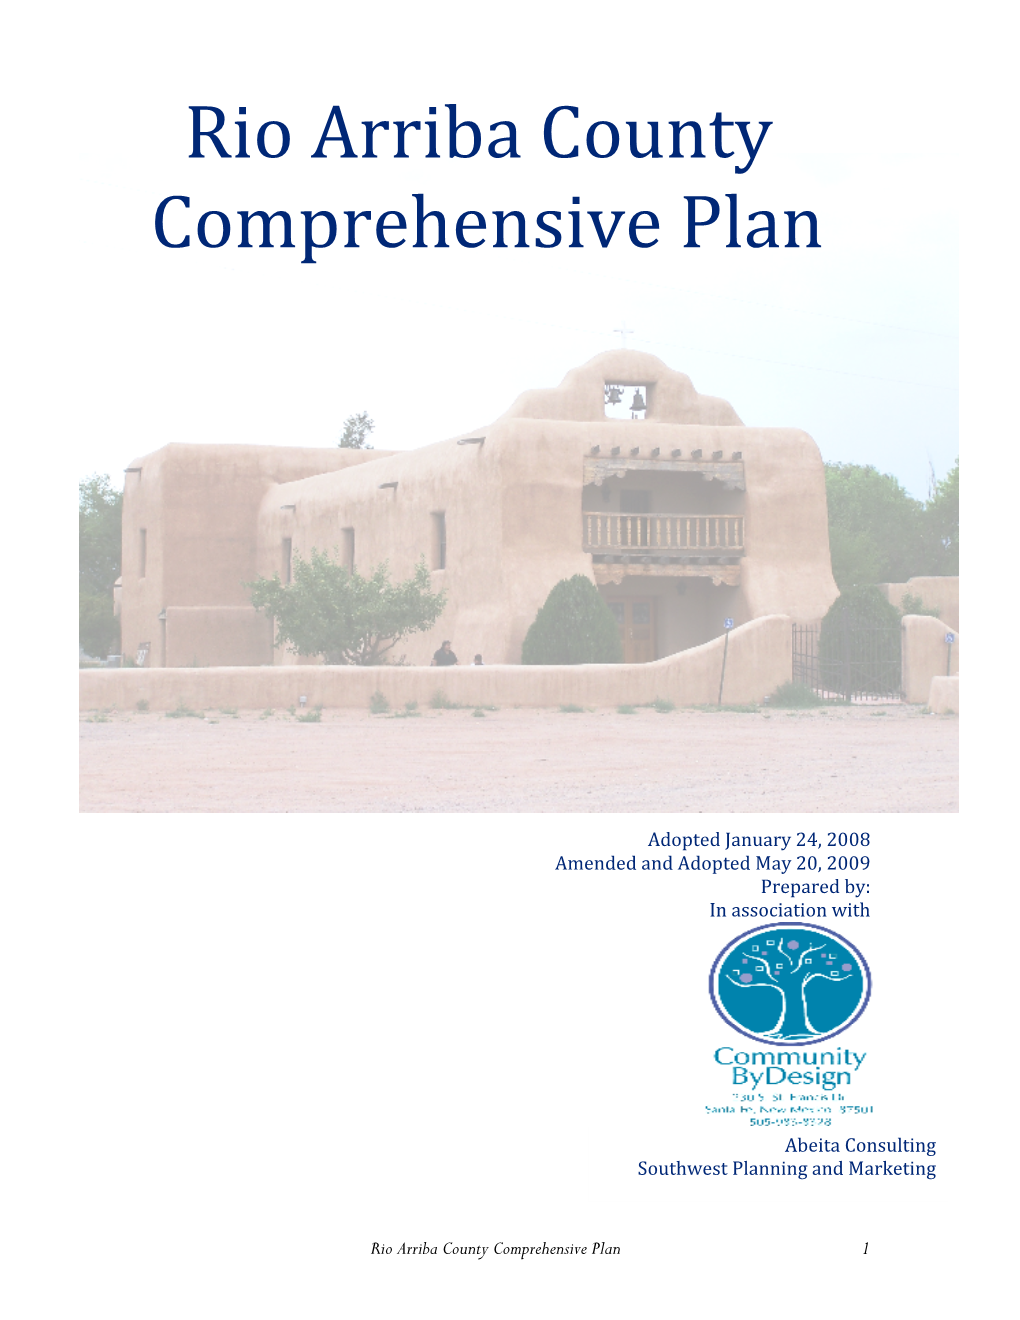 Rio Arriba County Comprehensive Plan